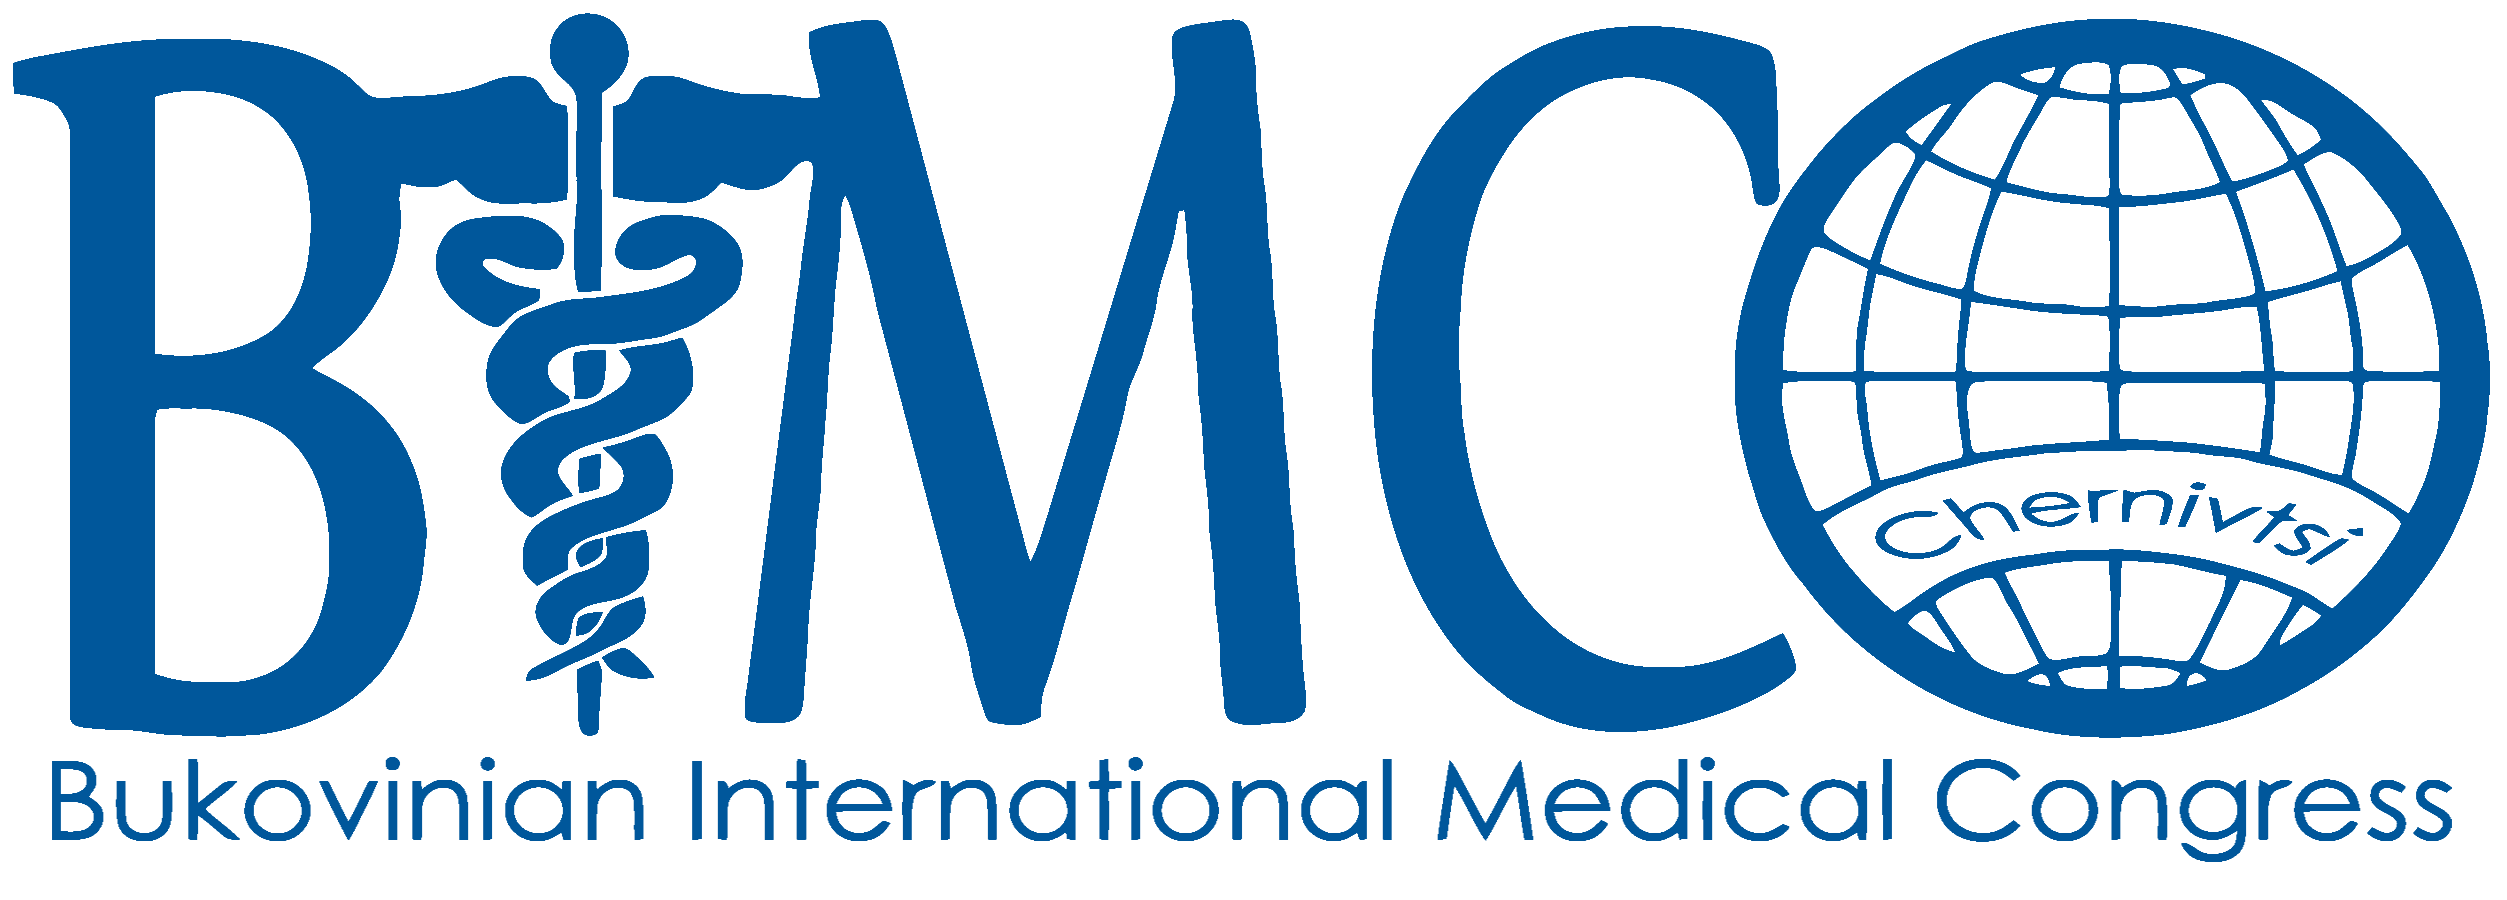 სტუდენთა და ახალგაზრდა მეცნიერთა რიგით მეექვსე   სამედიცინო-ფარმაცევტული საერთაშორისო კონგრესი -BIMCO 2019